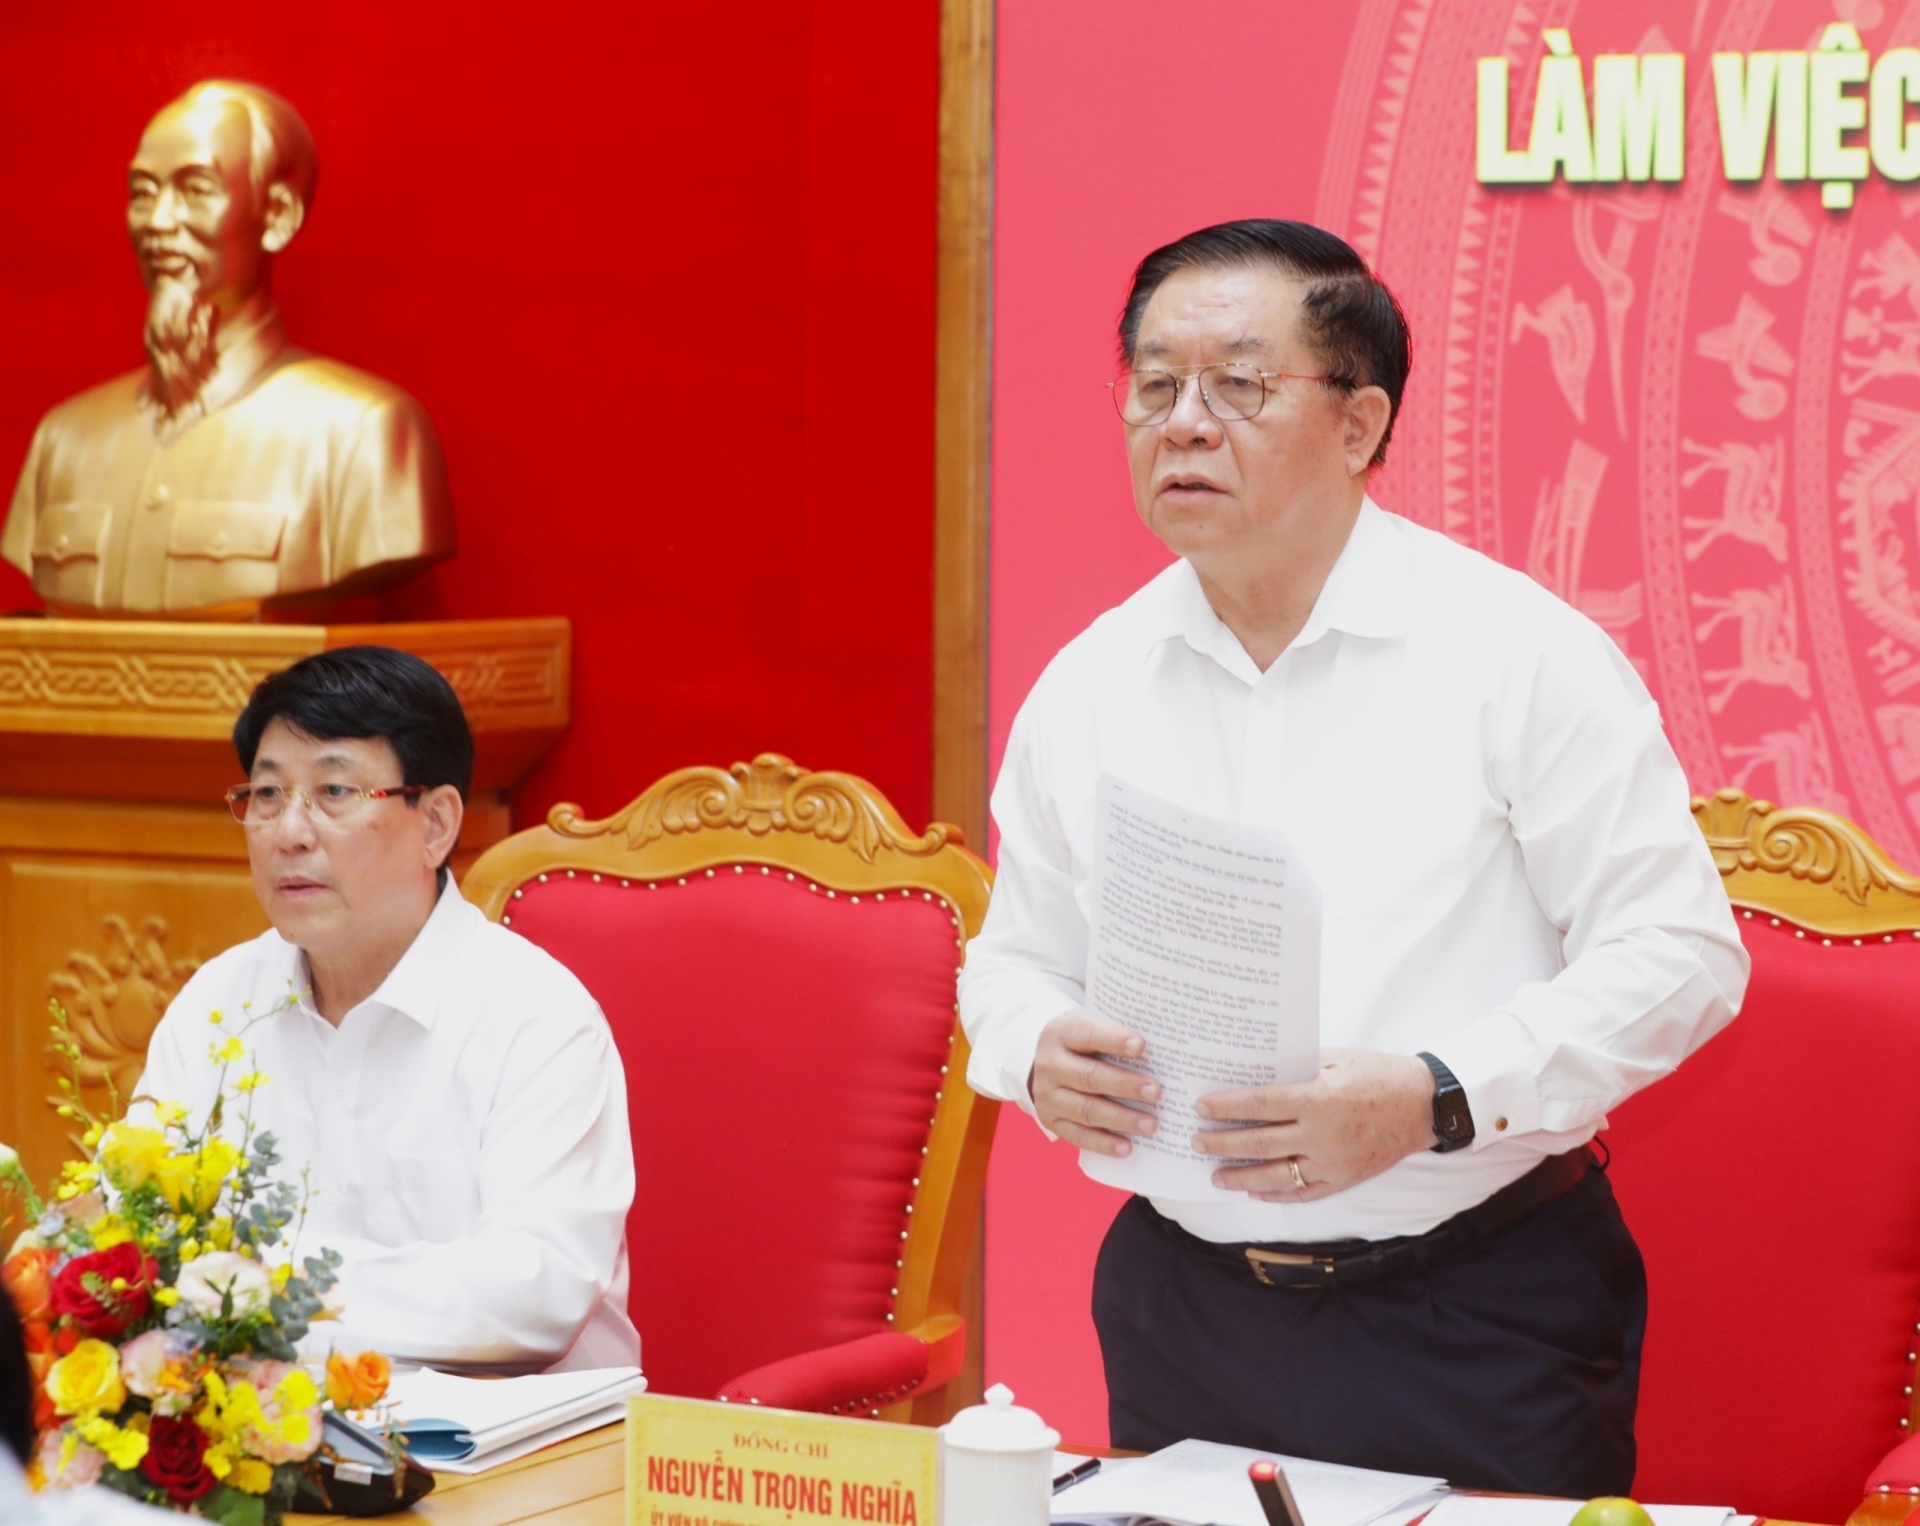 Đồng chí Nguyễn Trọng Nghĩa tiếp thu ý kiến tại buổi làm việc.